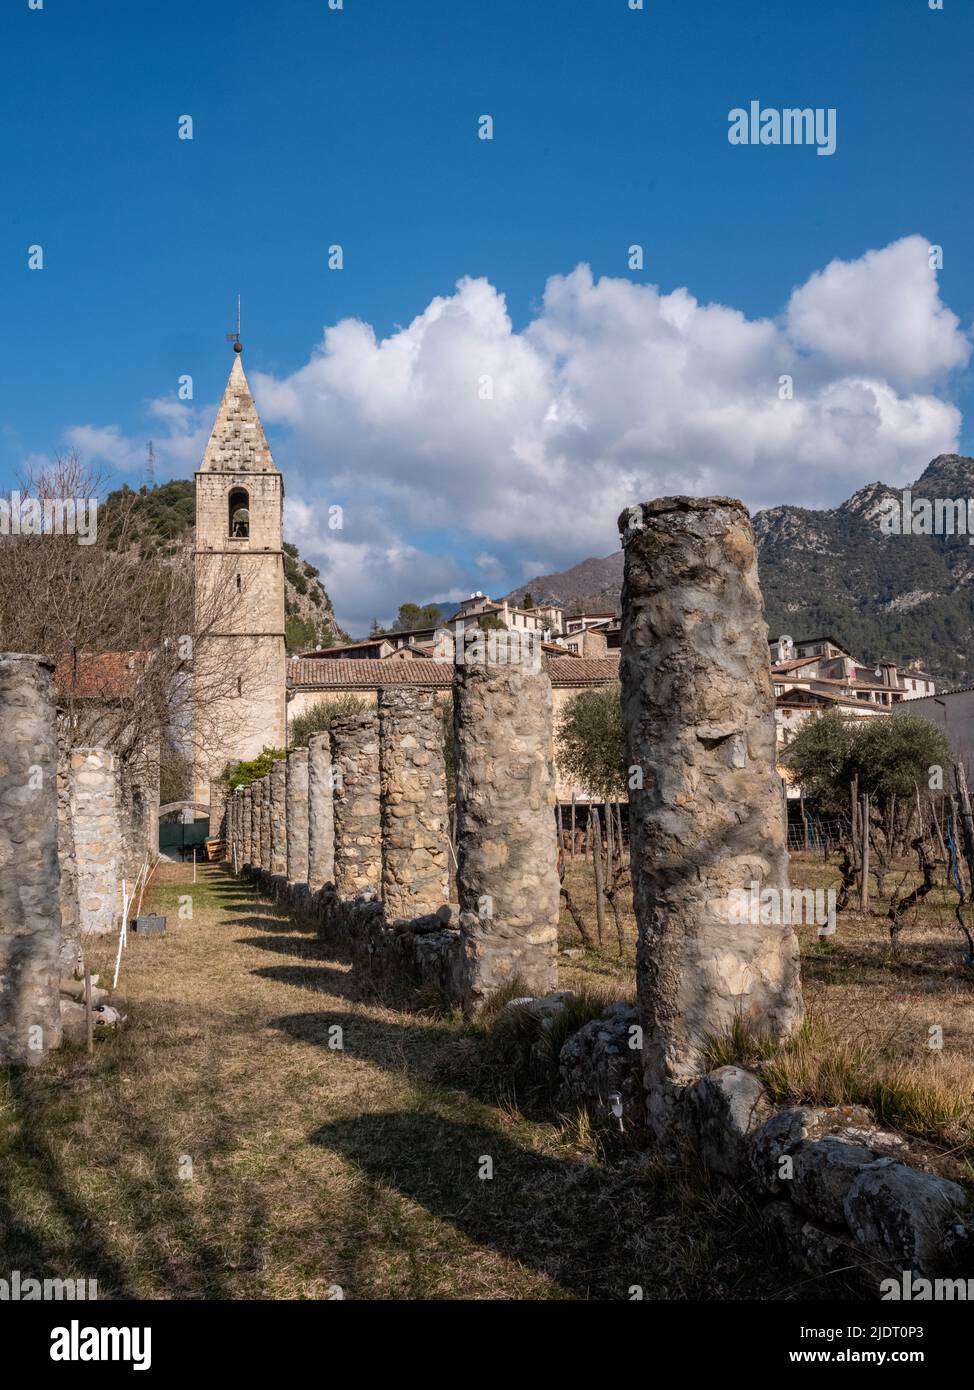 Blick auf 30 historische Säulen aus der Dorfkirche mit Glockenturm von Villars-sur-Var in der Provinz Alpen-Maritimes im Südosten Frankreichs. Stockfoto